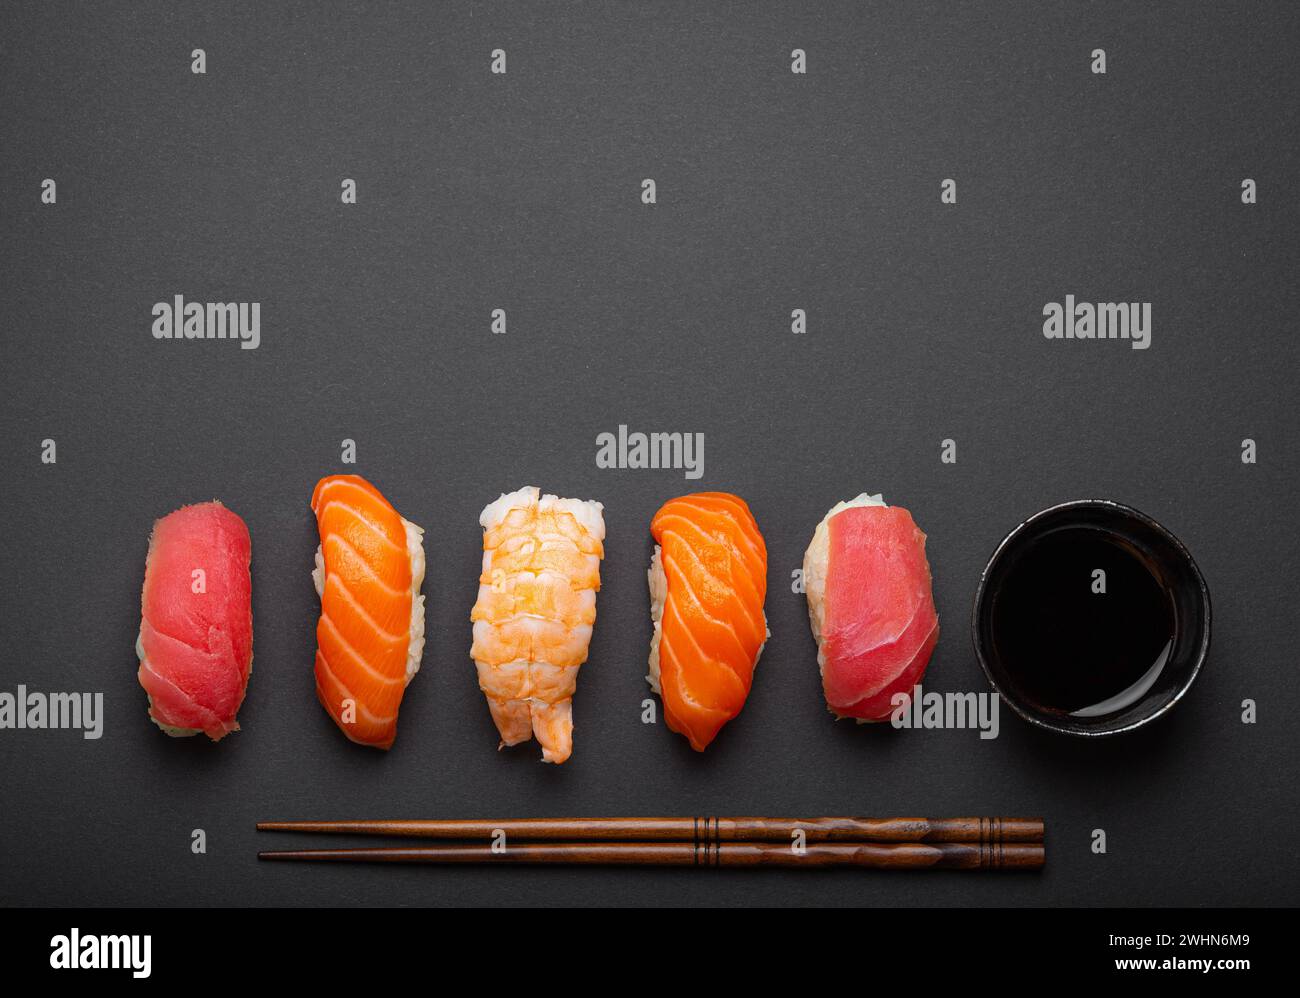 Sushi traditionnel japonais vue de dessus avec sauce soja et baguettes sur fond noir foncé minimal. Sushi au saumon, thon, shr Banque D'Images